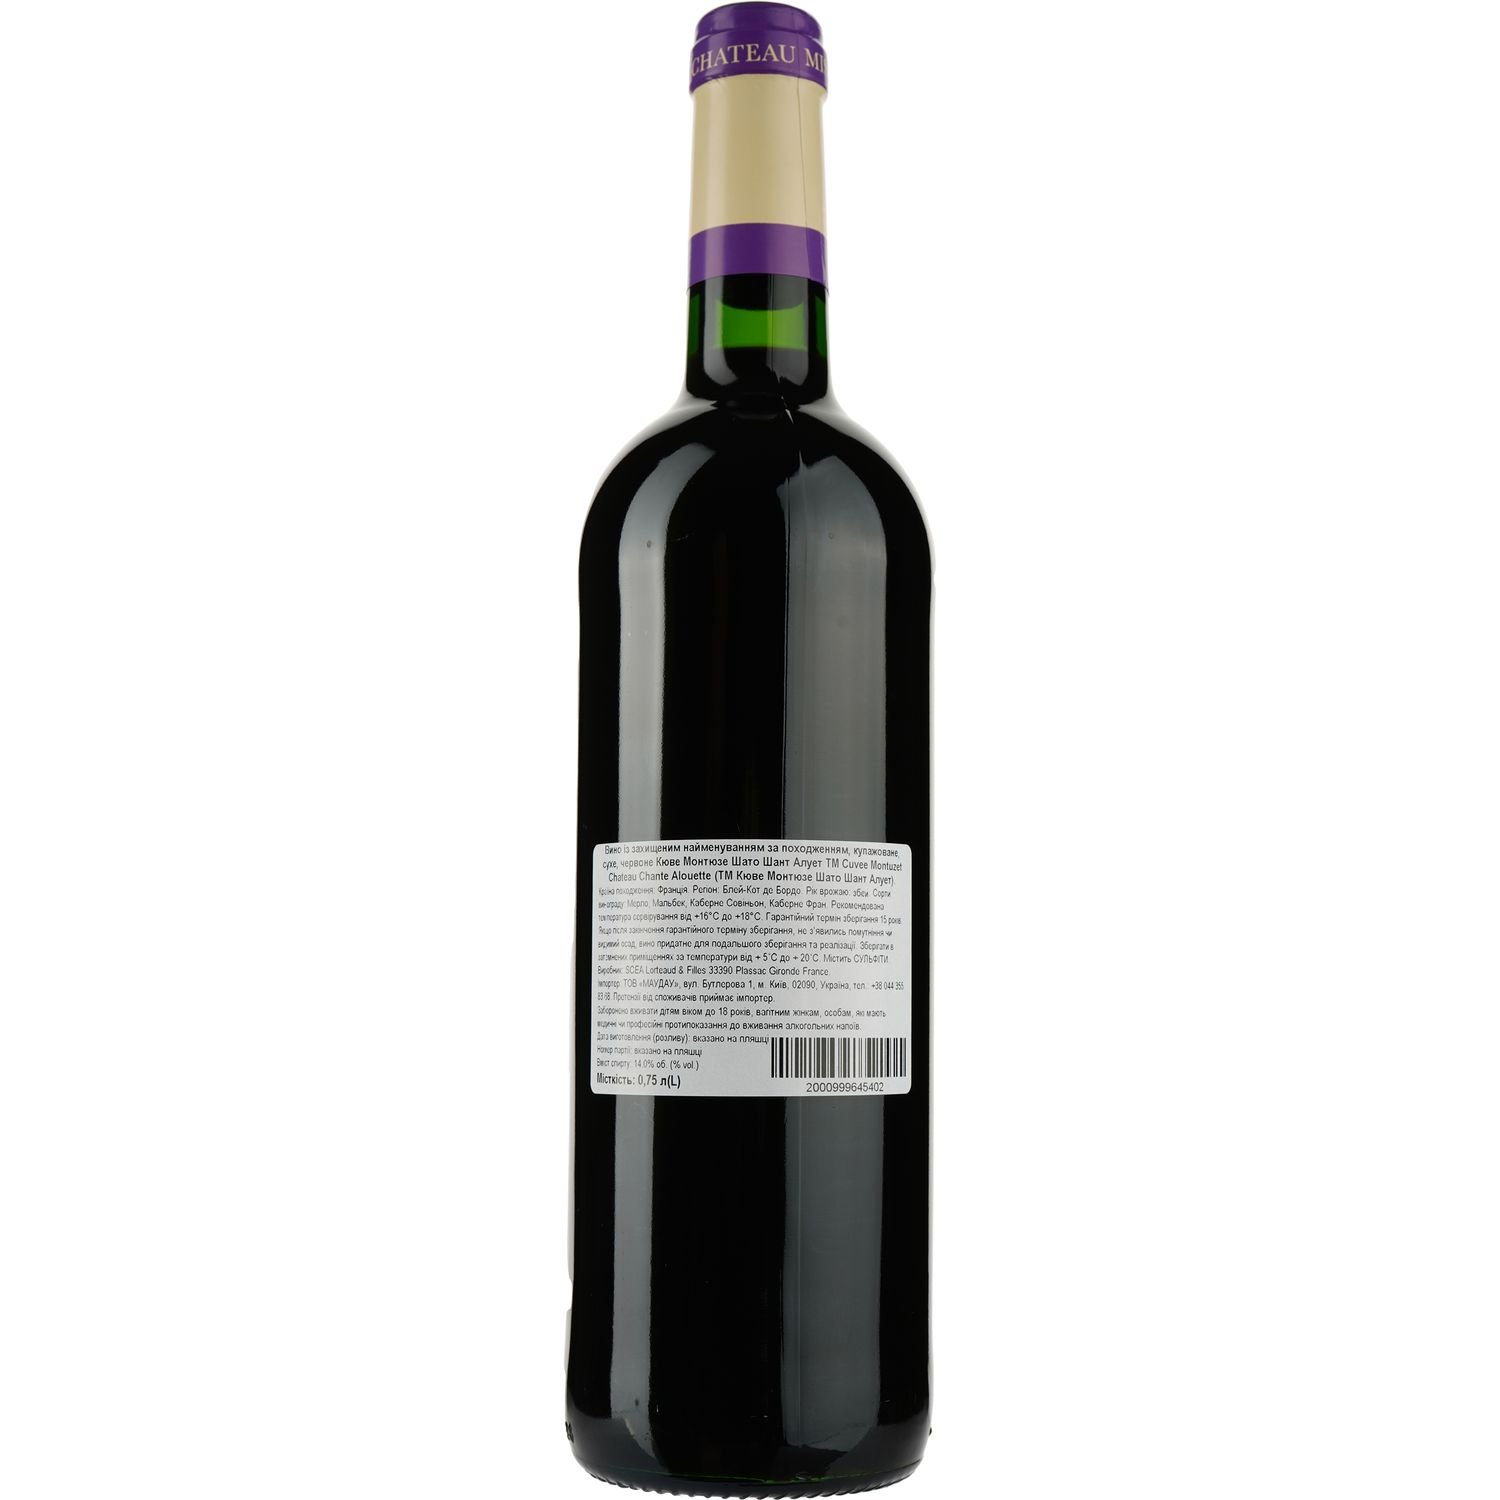 Вино Cuvee Montuzet Chateau Chante Alouette AOP Blaye Cotes de Bordeaux 2015, червоне, сухе, 0,75 л - фото 2